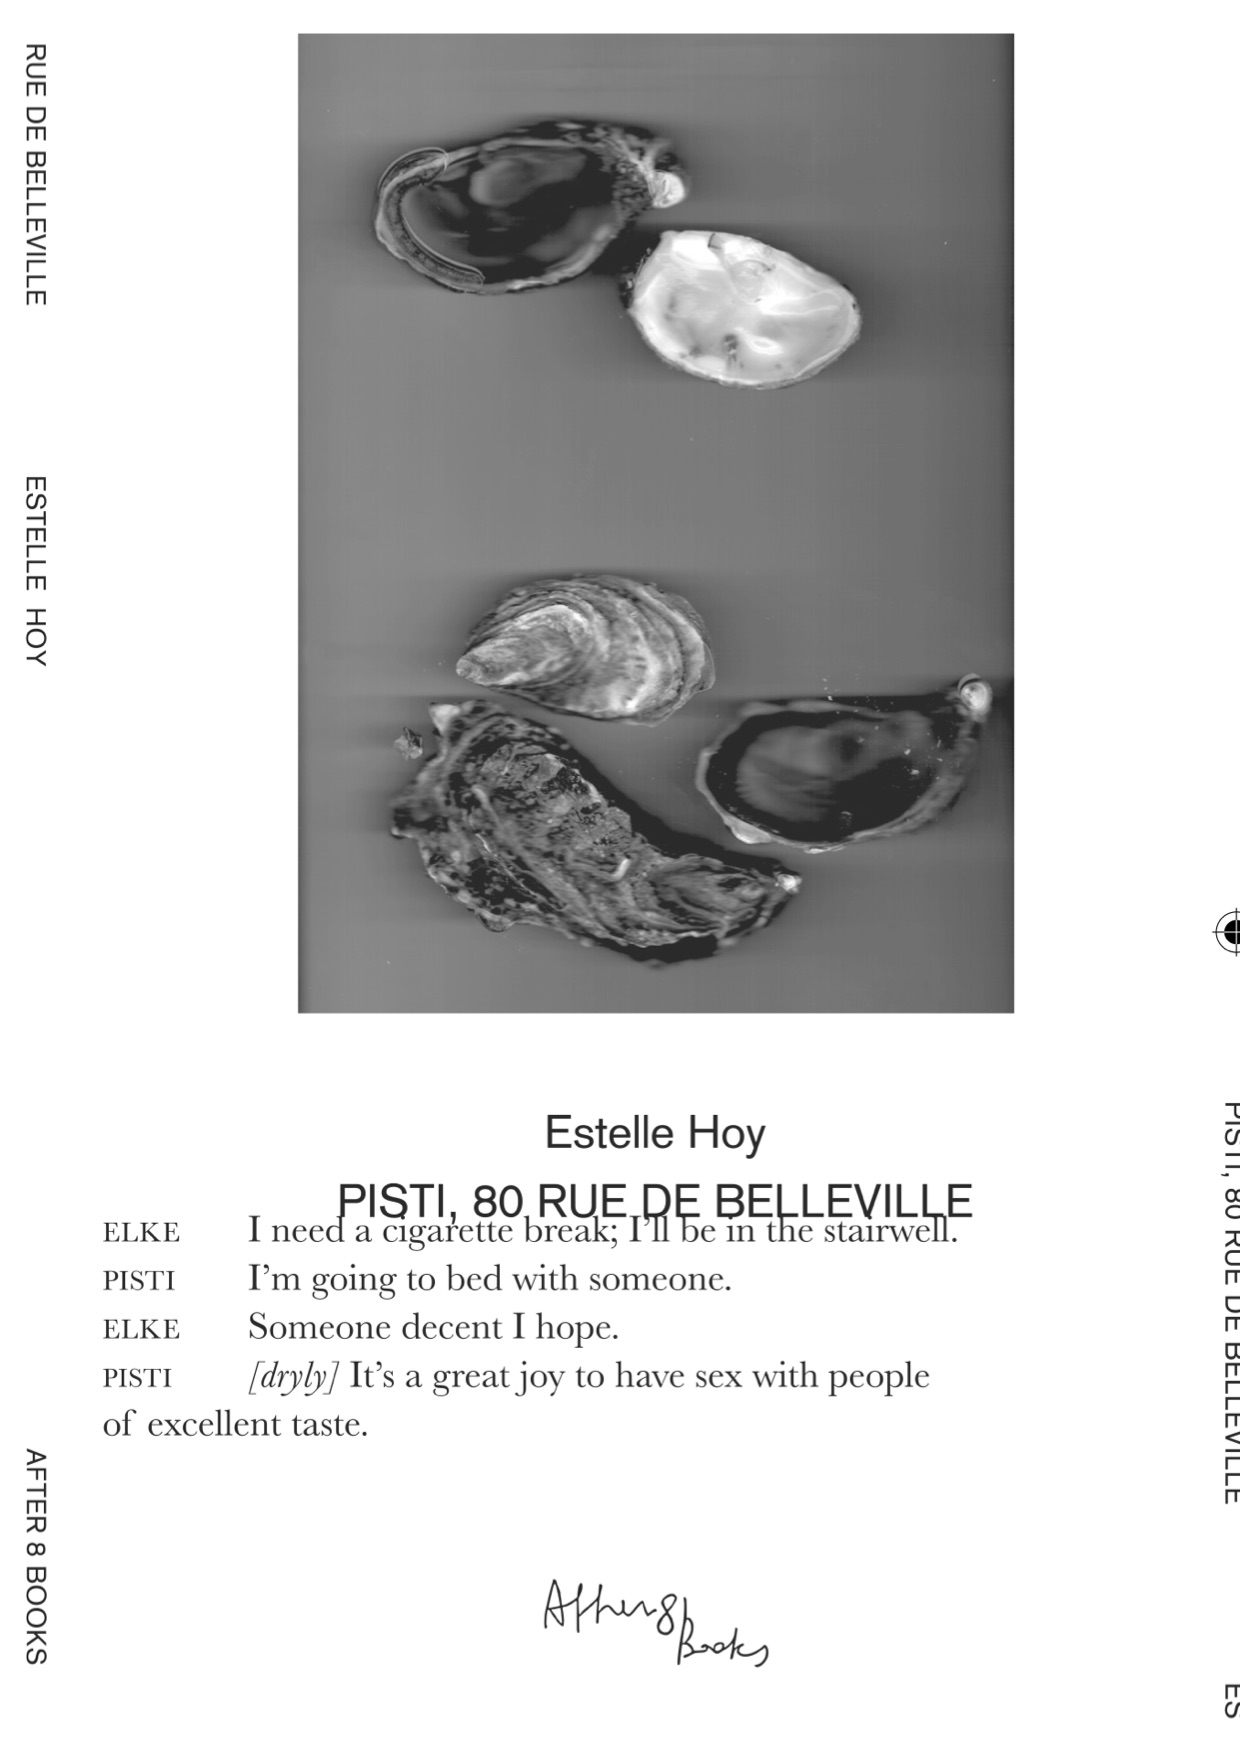 HOY, Estelle - Pisti, 80 rue de Belleville